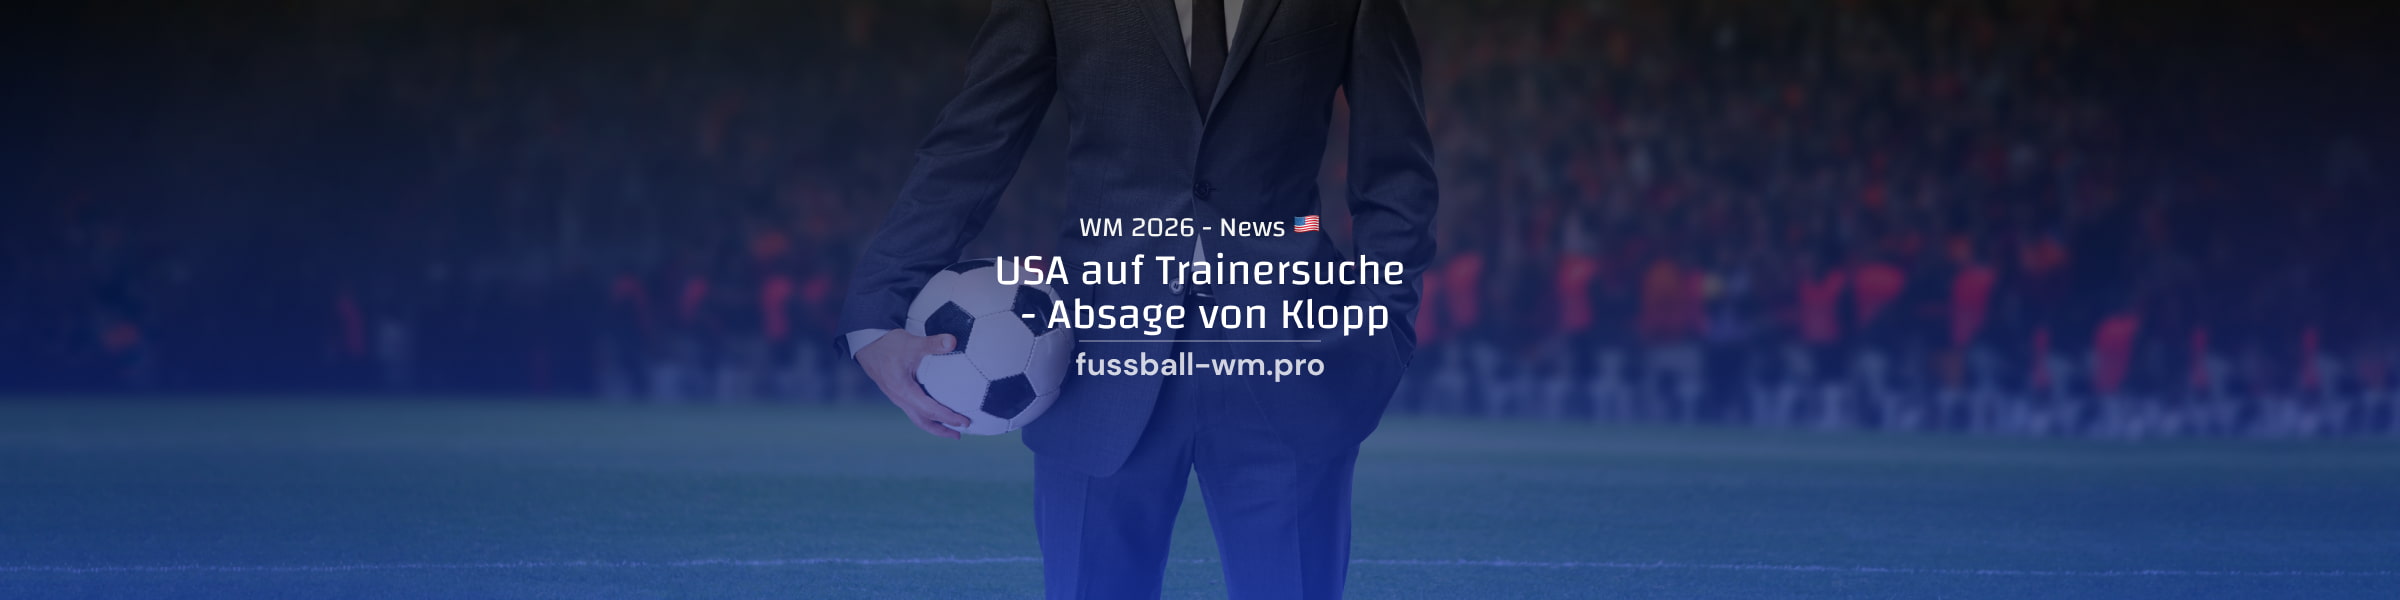 USA auf Trainersuche, WM 2026